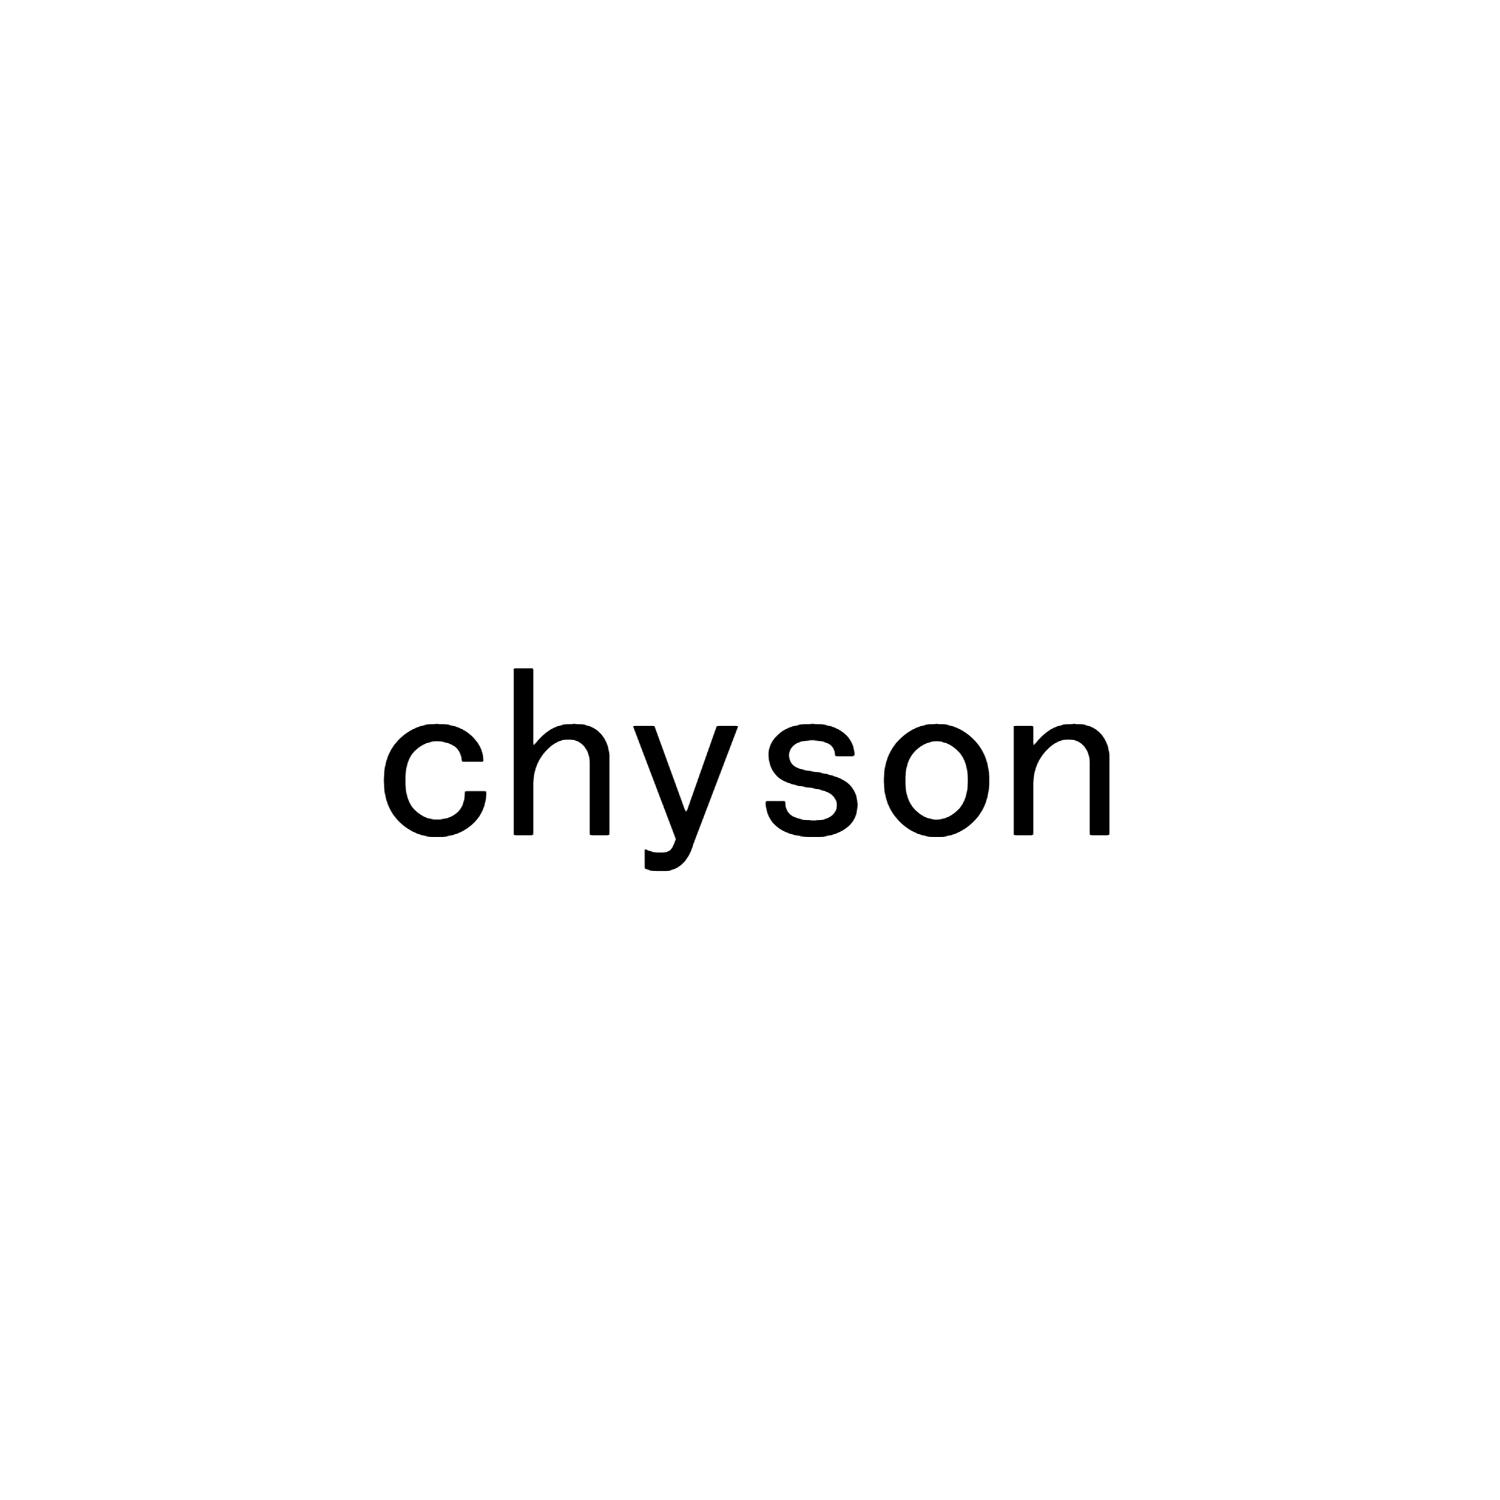 chyson